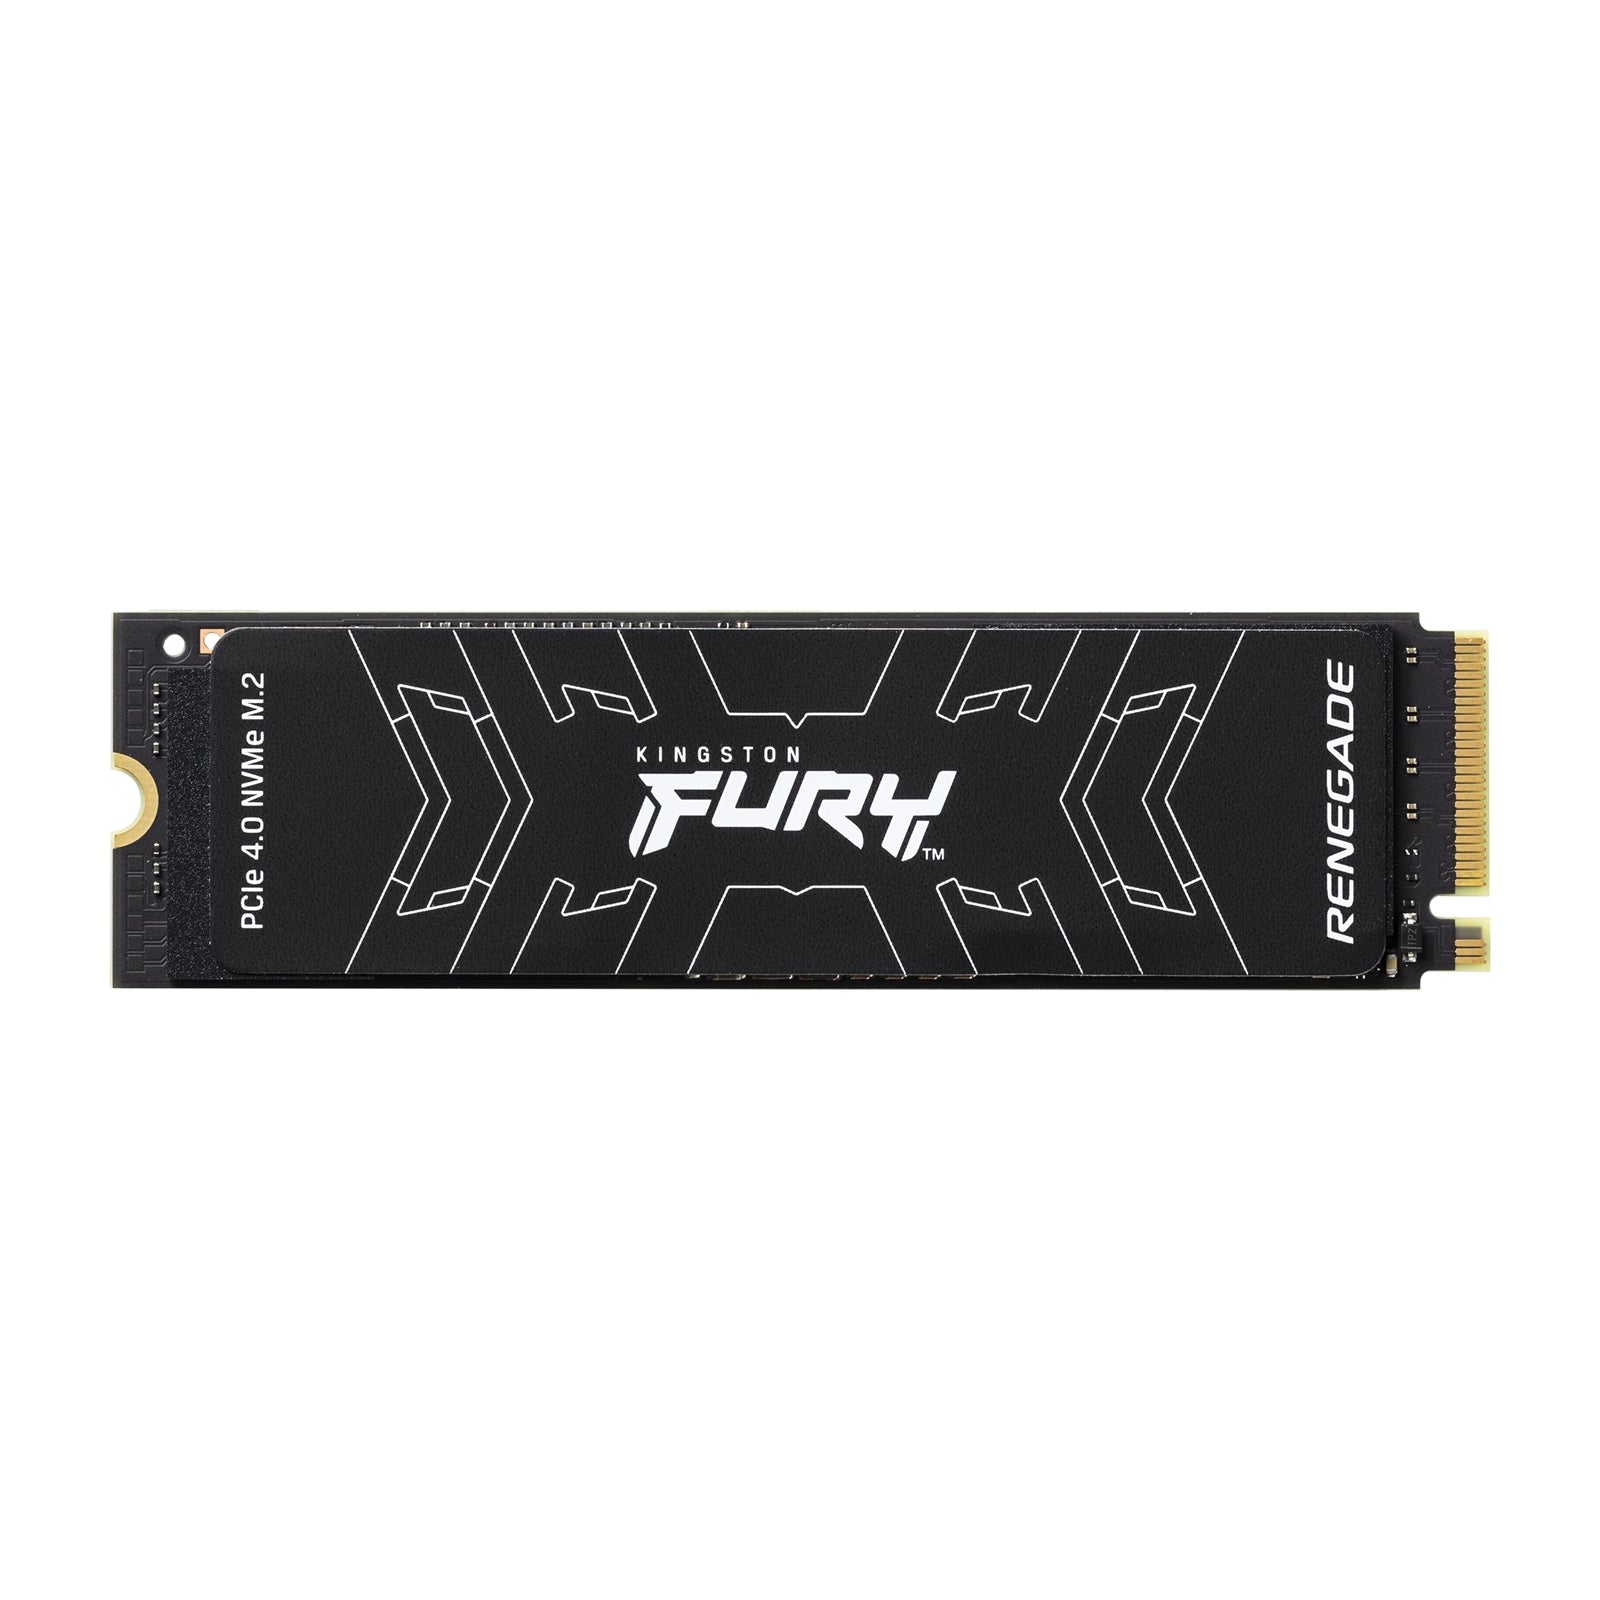 Kingston FURY Renegade 4TB PCIe 4.0 M.2 NVMe SSD